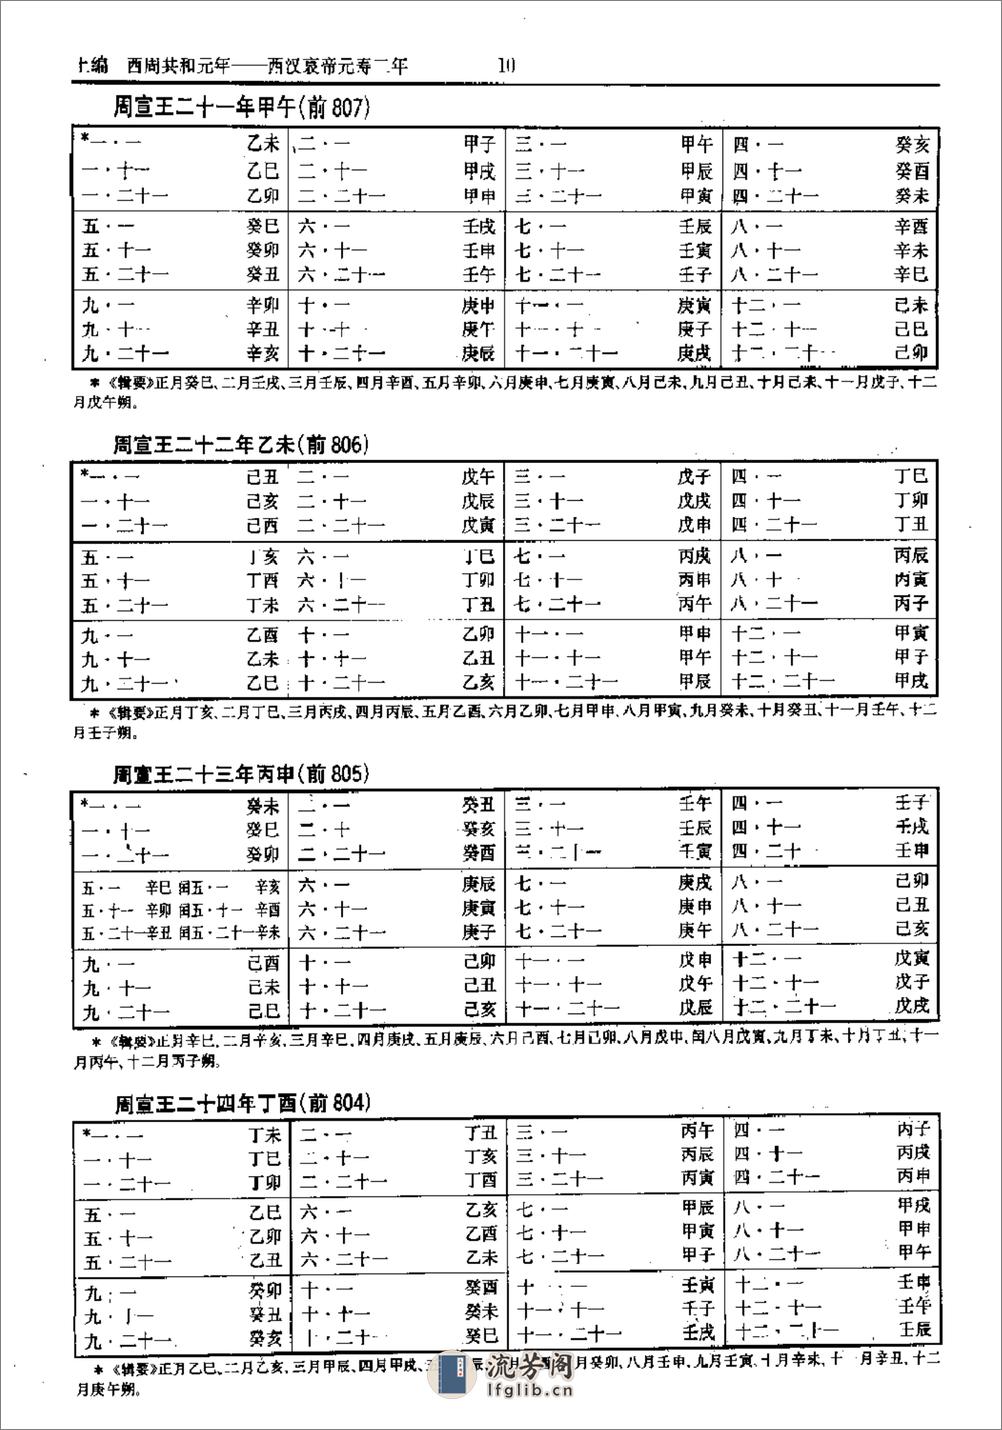 中国史历日和中西历日对照表·方诗铭·上海辞书1 - 第15页预览图